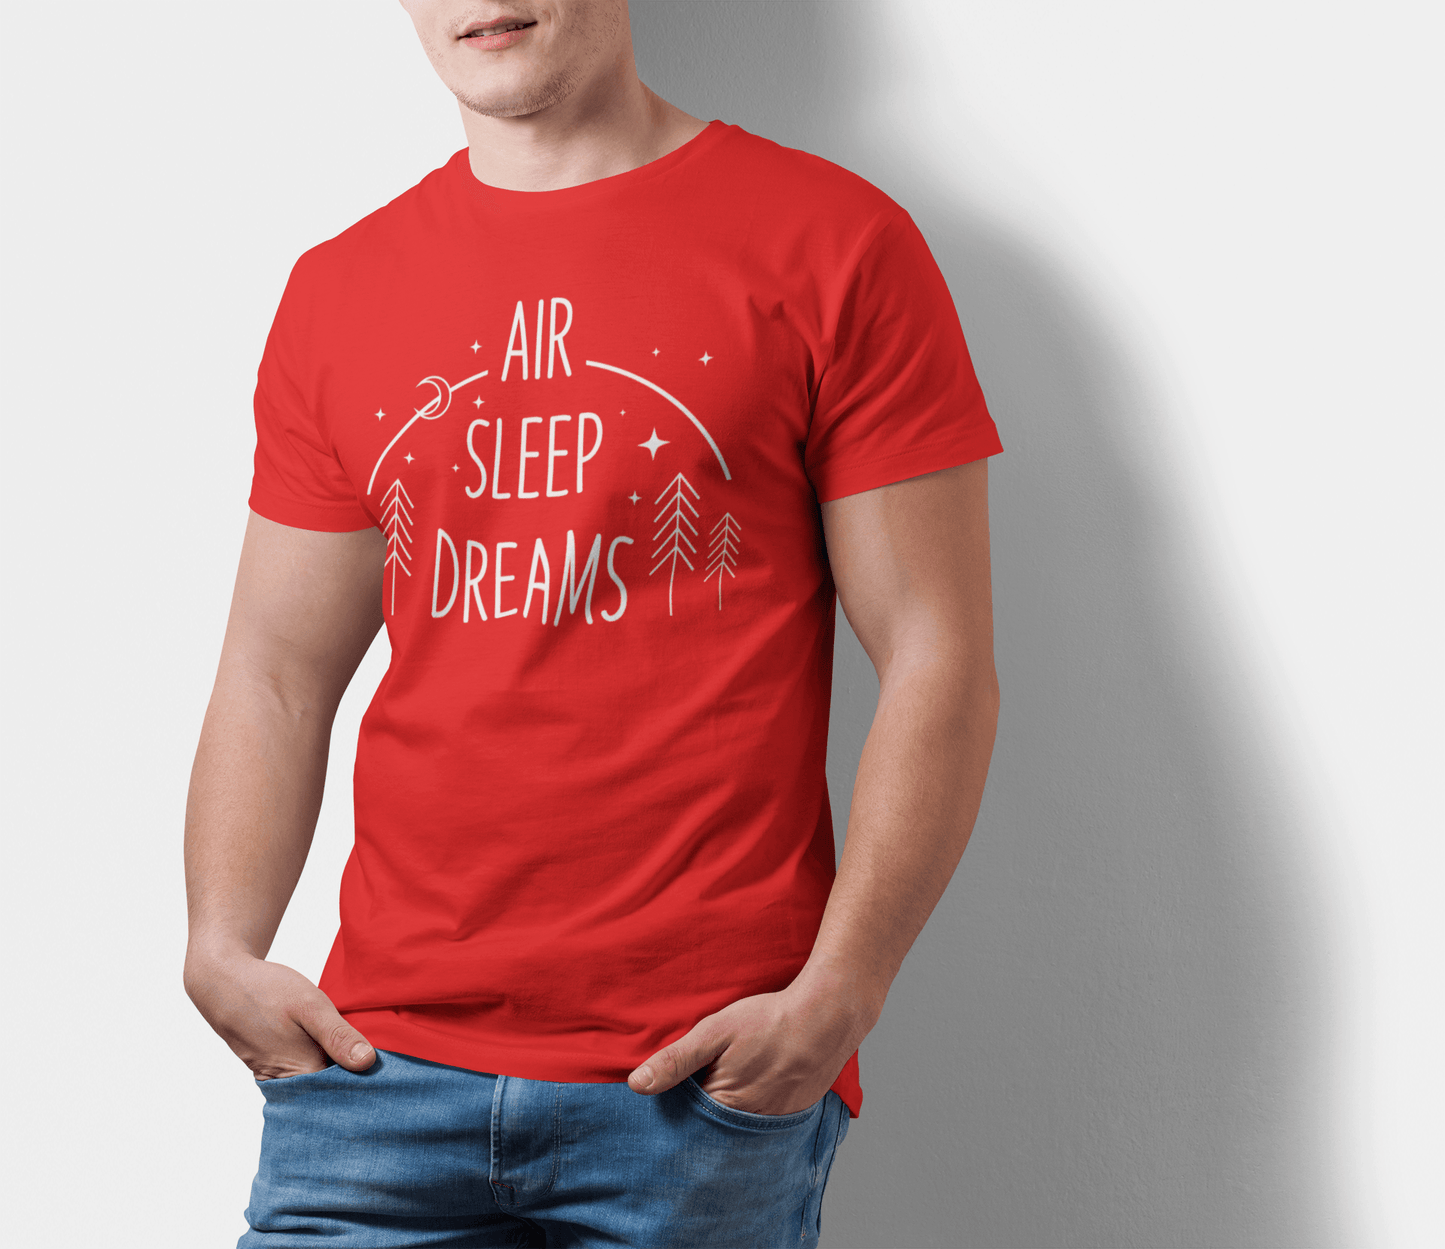 Air Sleep Dreams Red T-Shirt For Men - ATOM